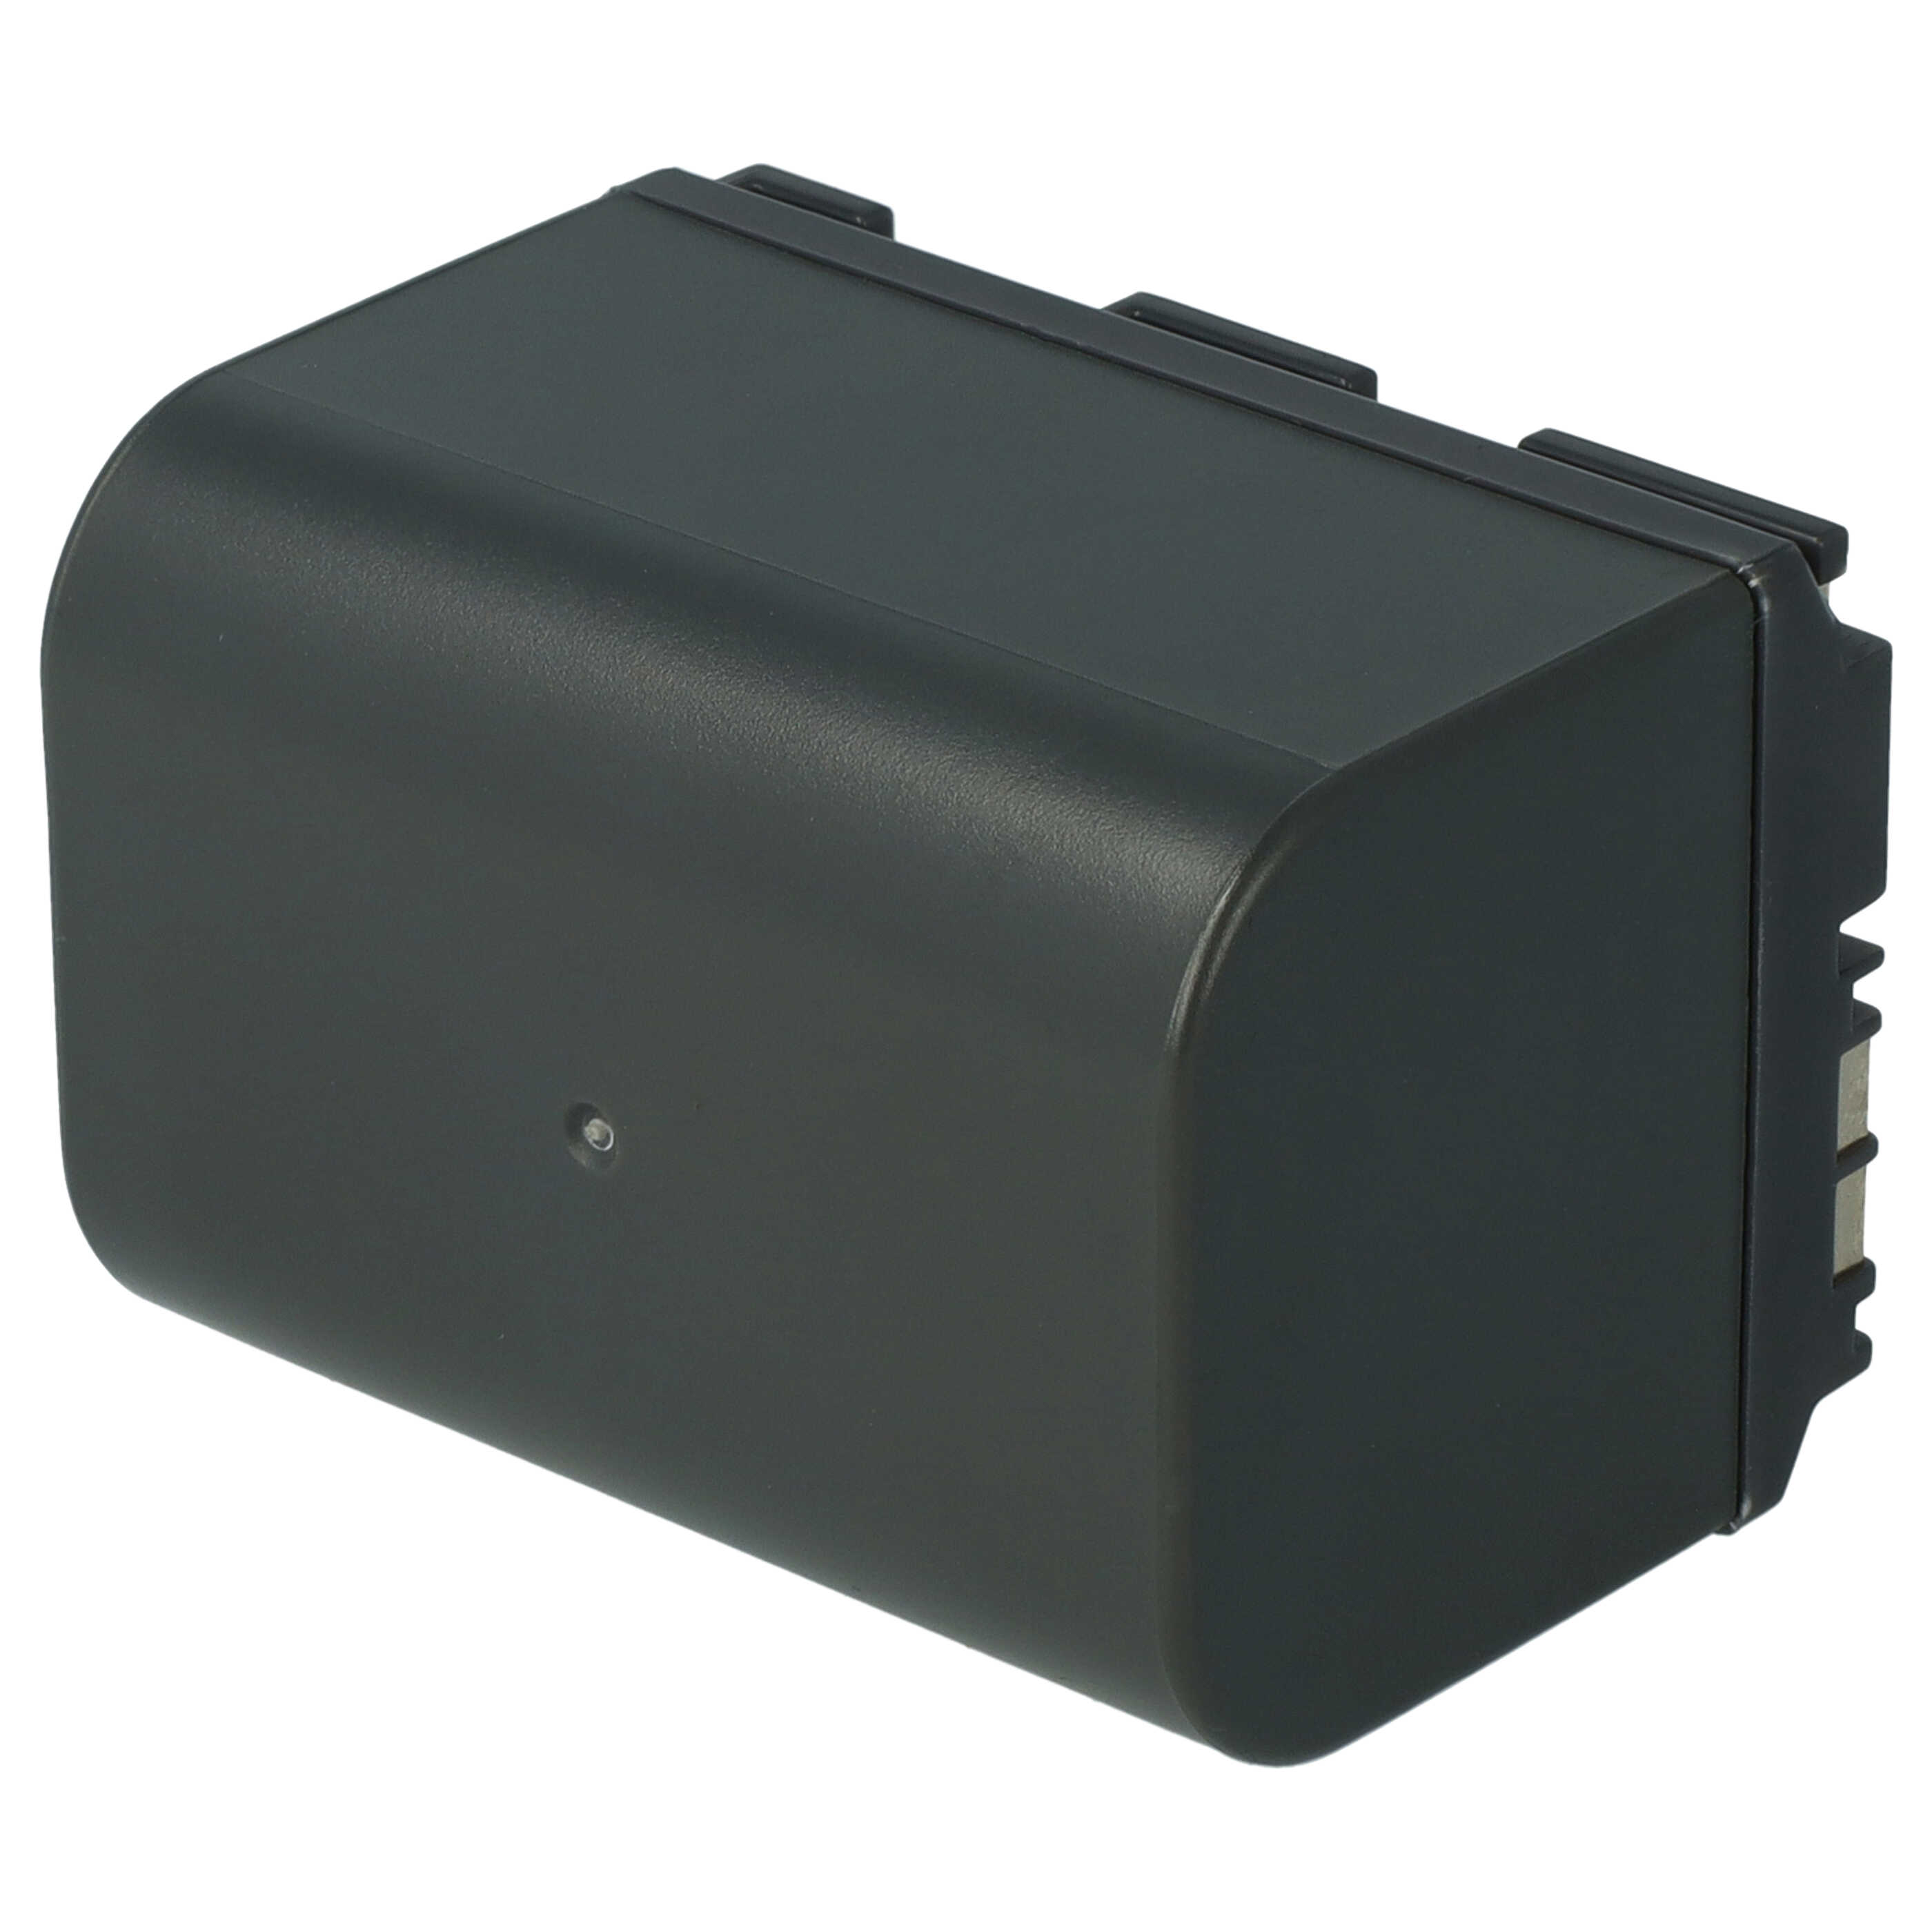 Videocamera Battery Replacement for Canon BP-535, BP-511, BP-522, BP-512, BP-514 - 2800mAh 7.2V Li-Ion